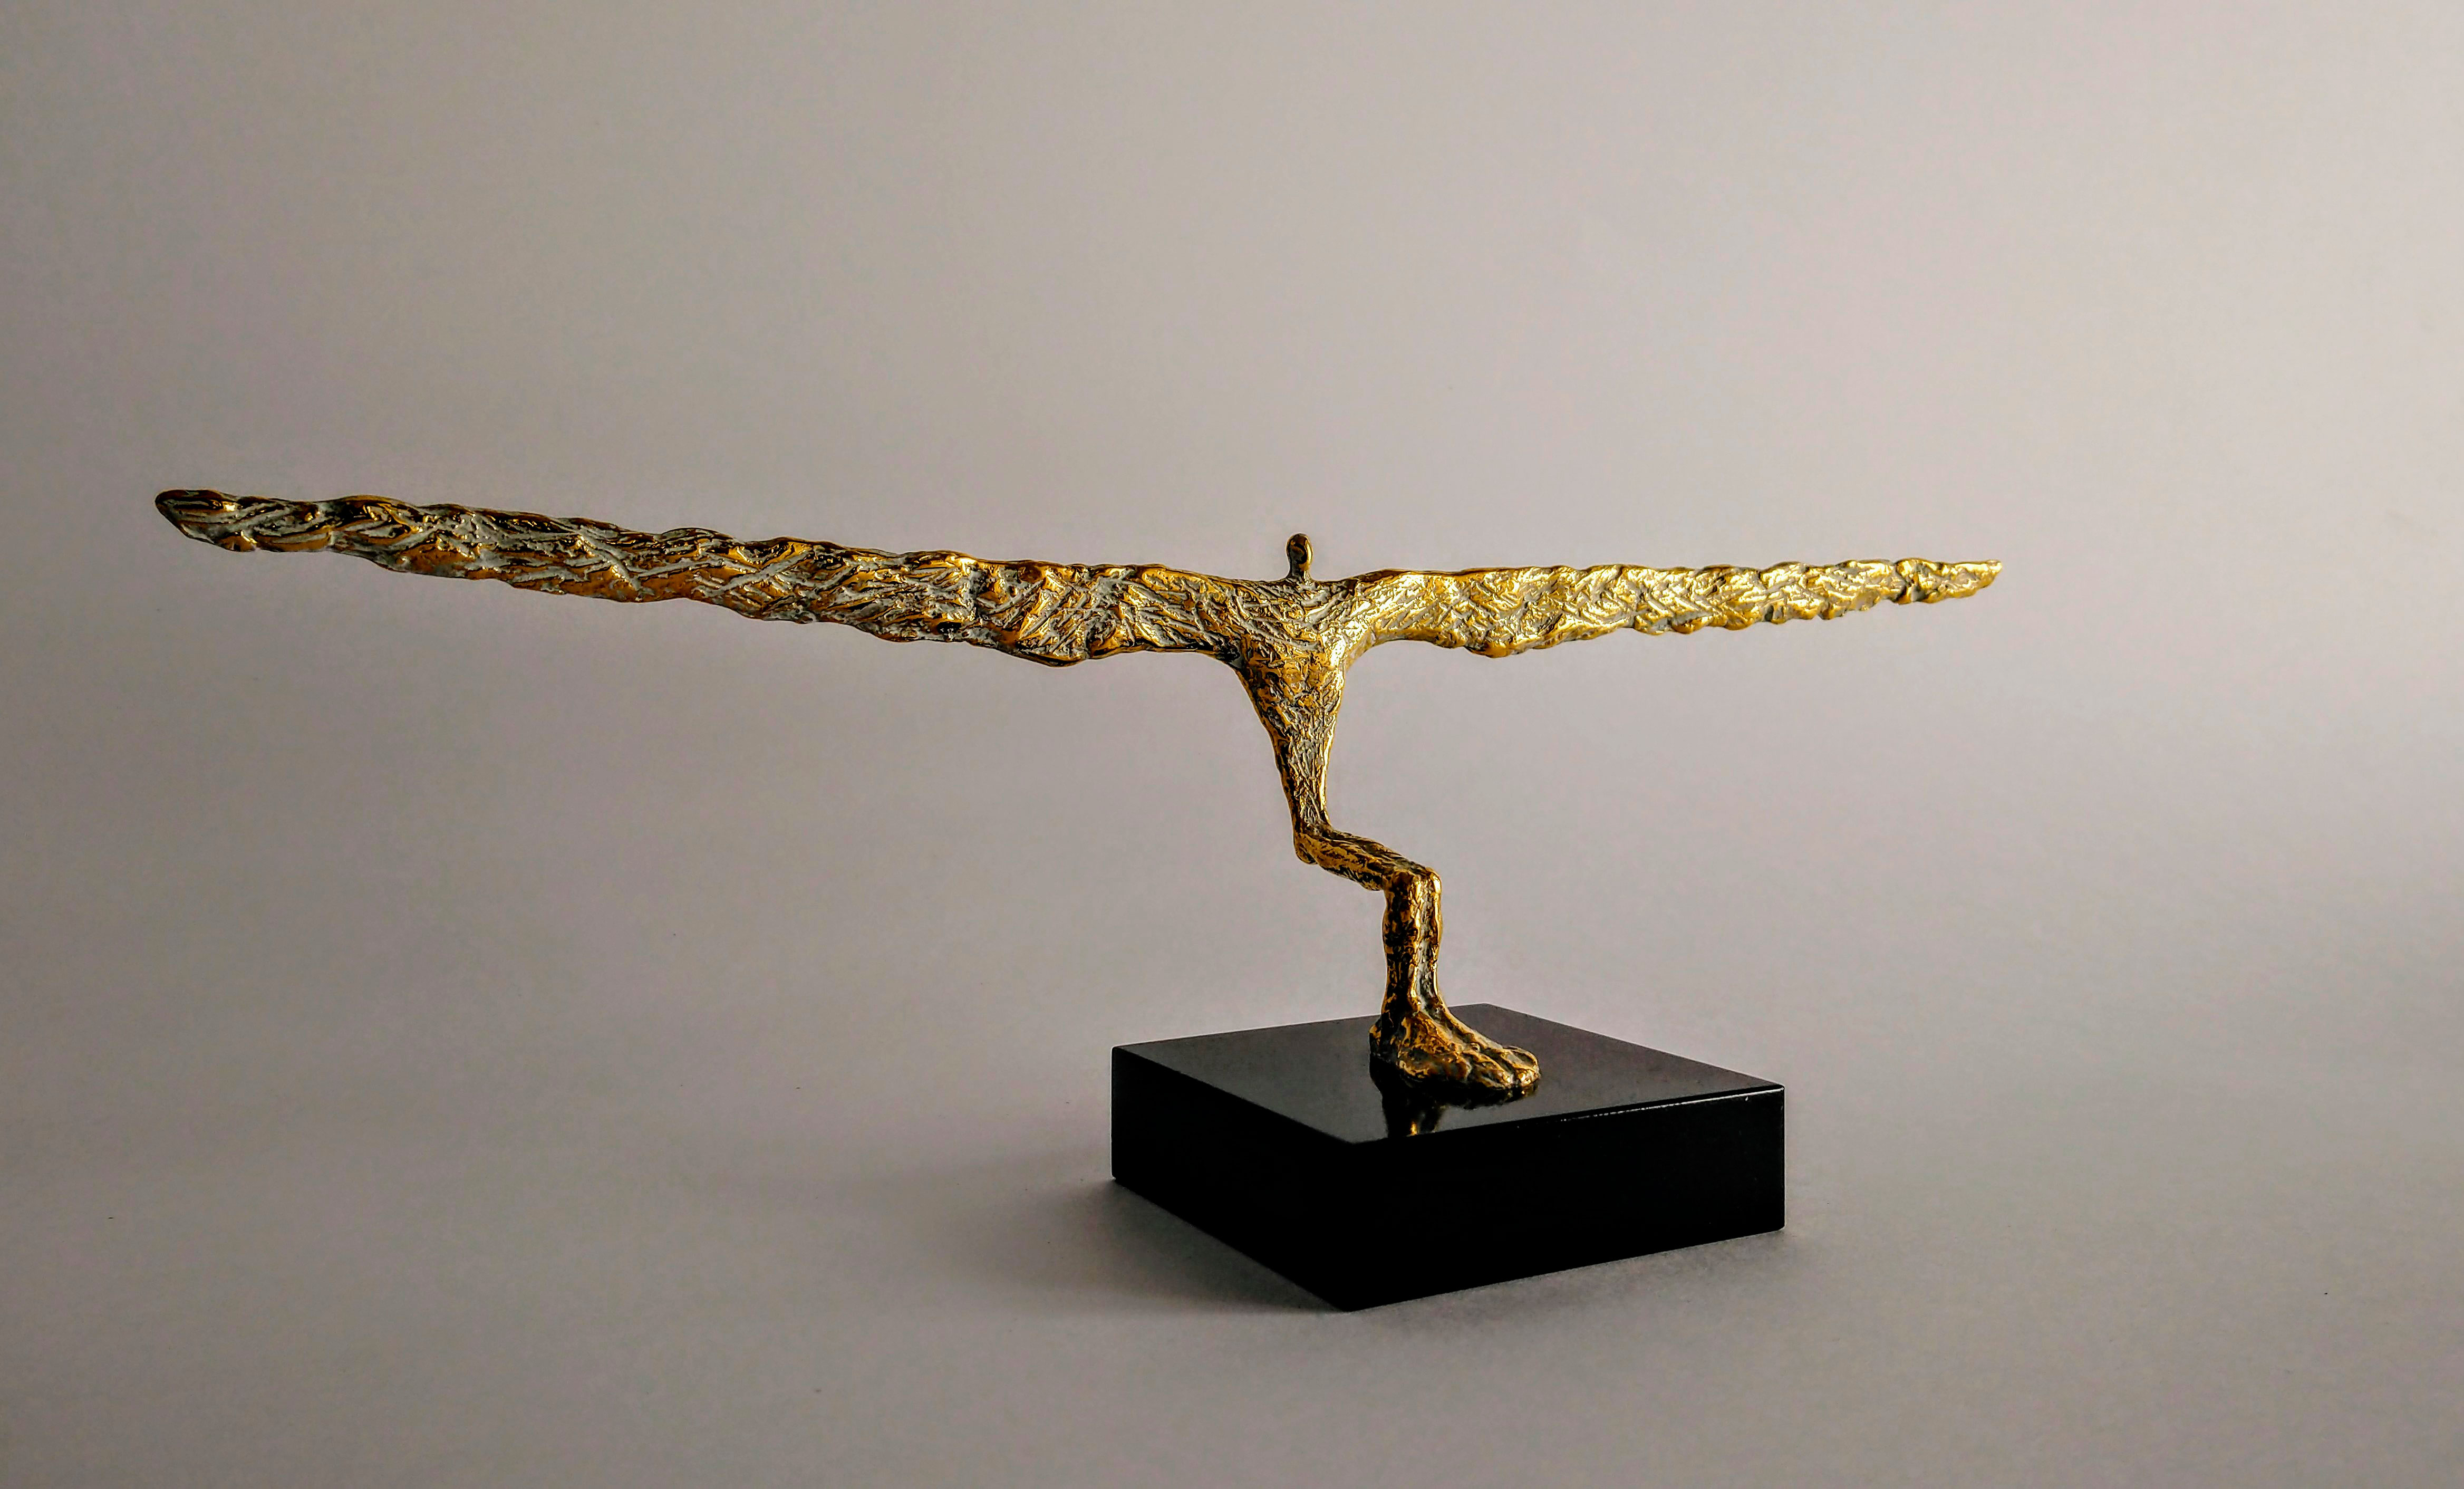 Winged - 1, Nikolay Predein, 买画 铸造